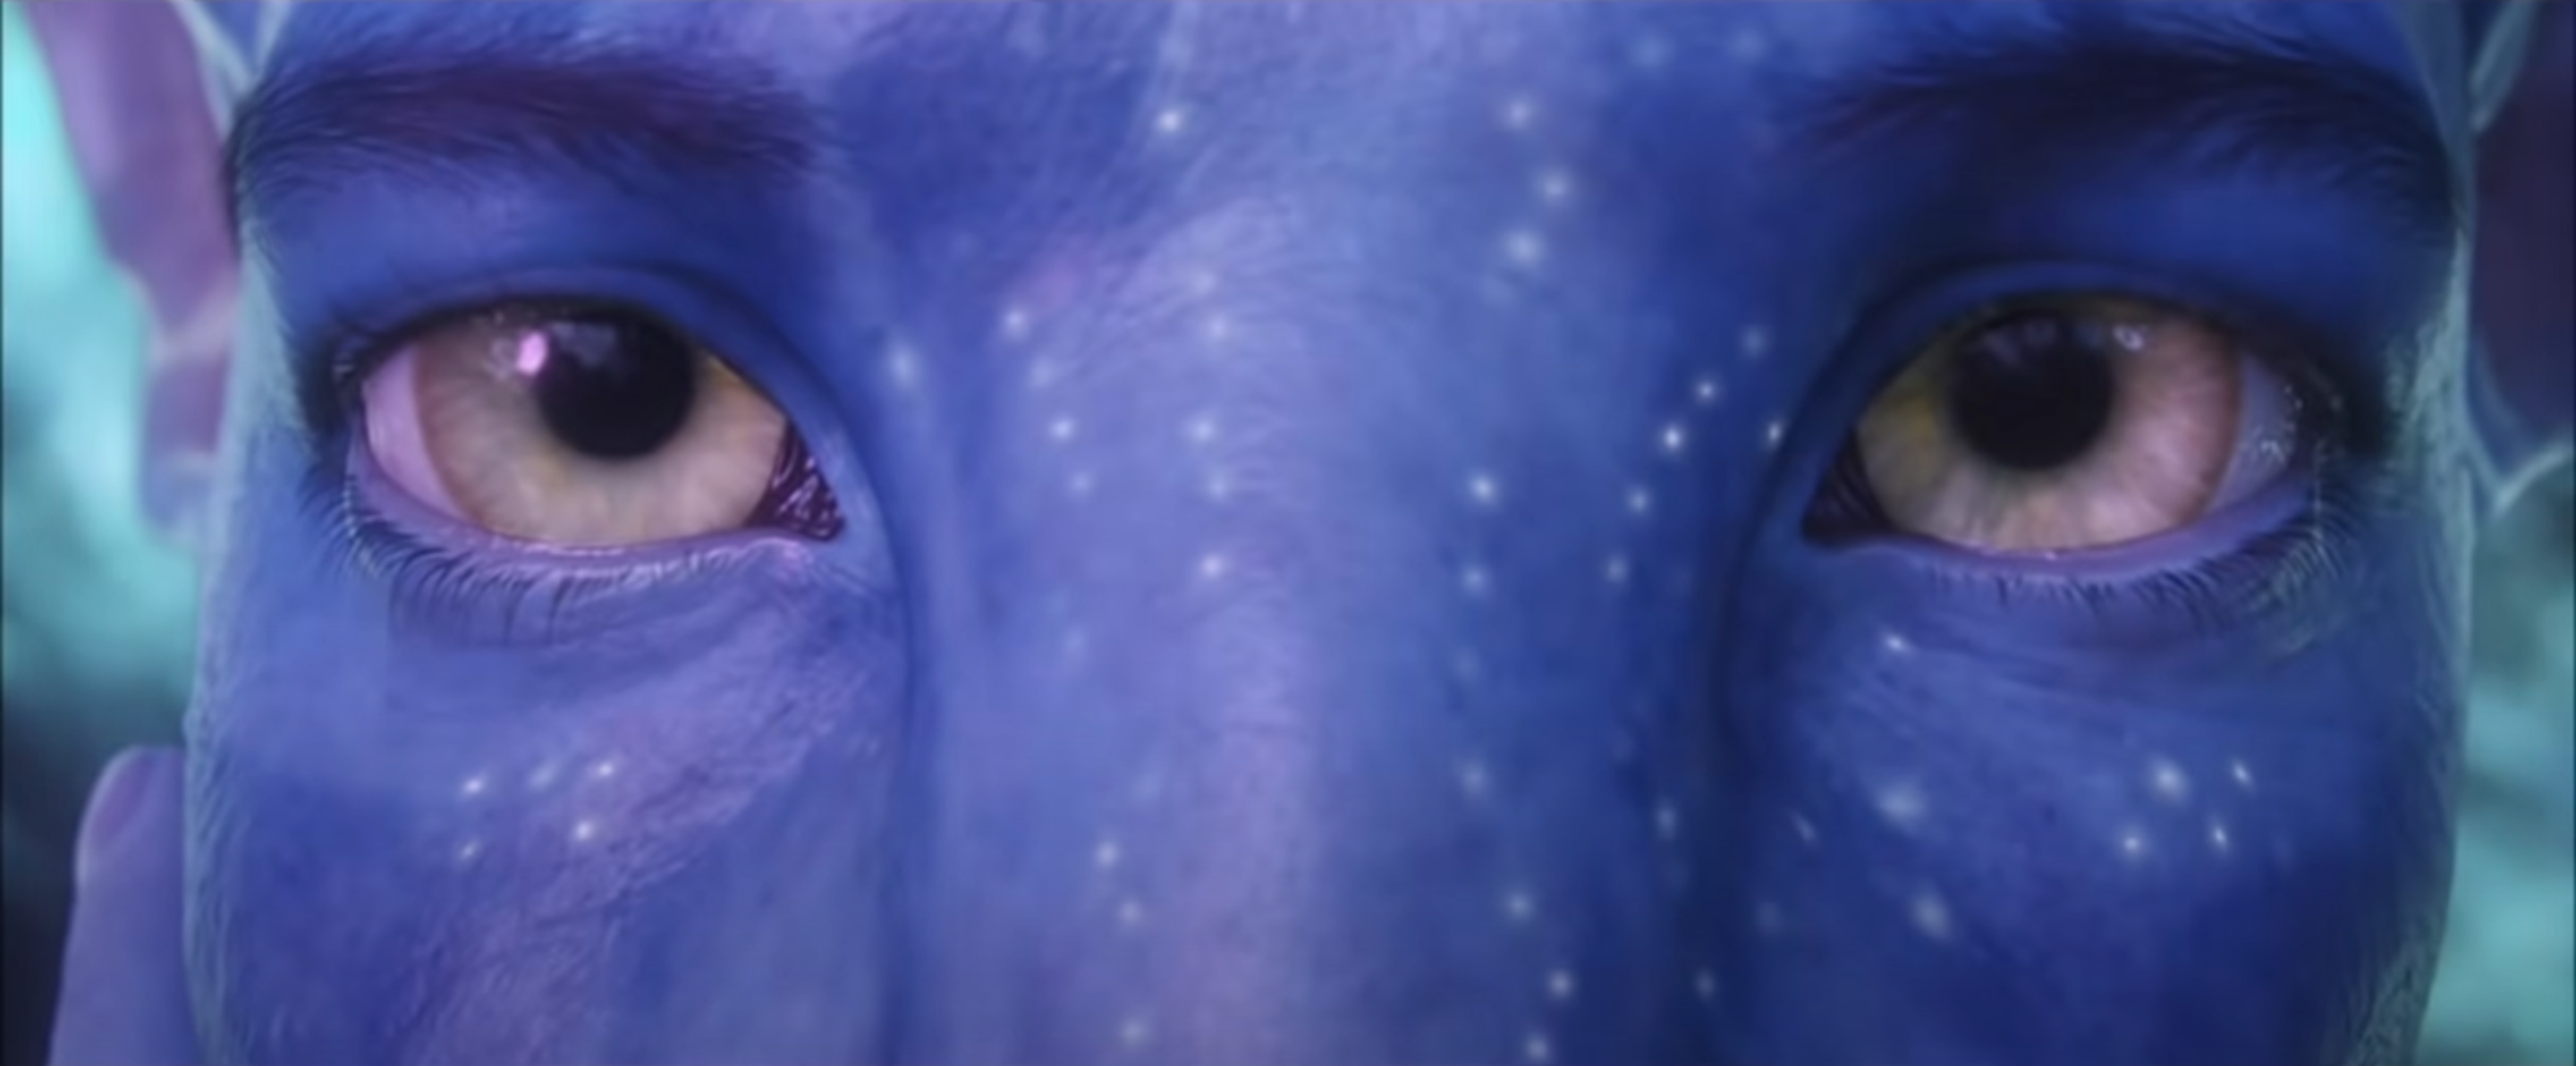 La secuela de “Avatar” ya tiene título y fecha de estreno